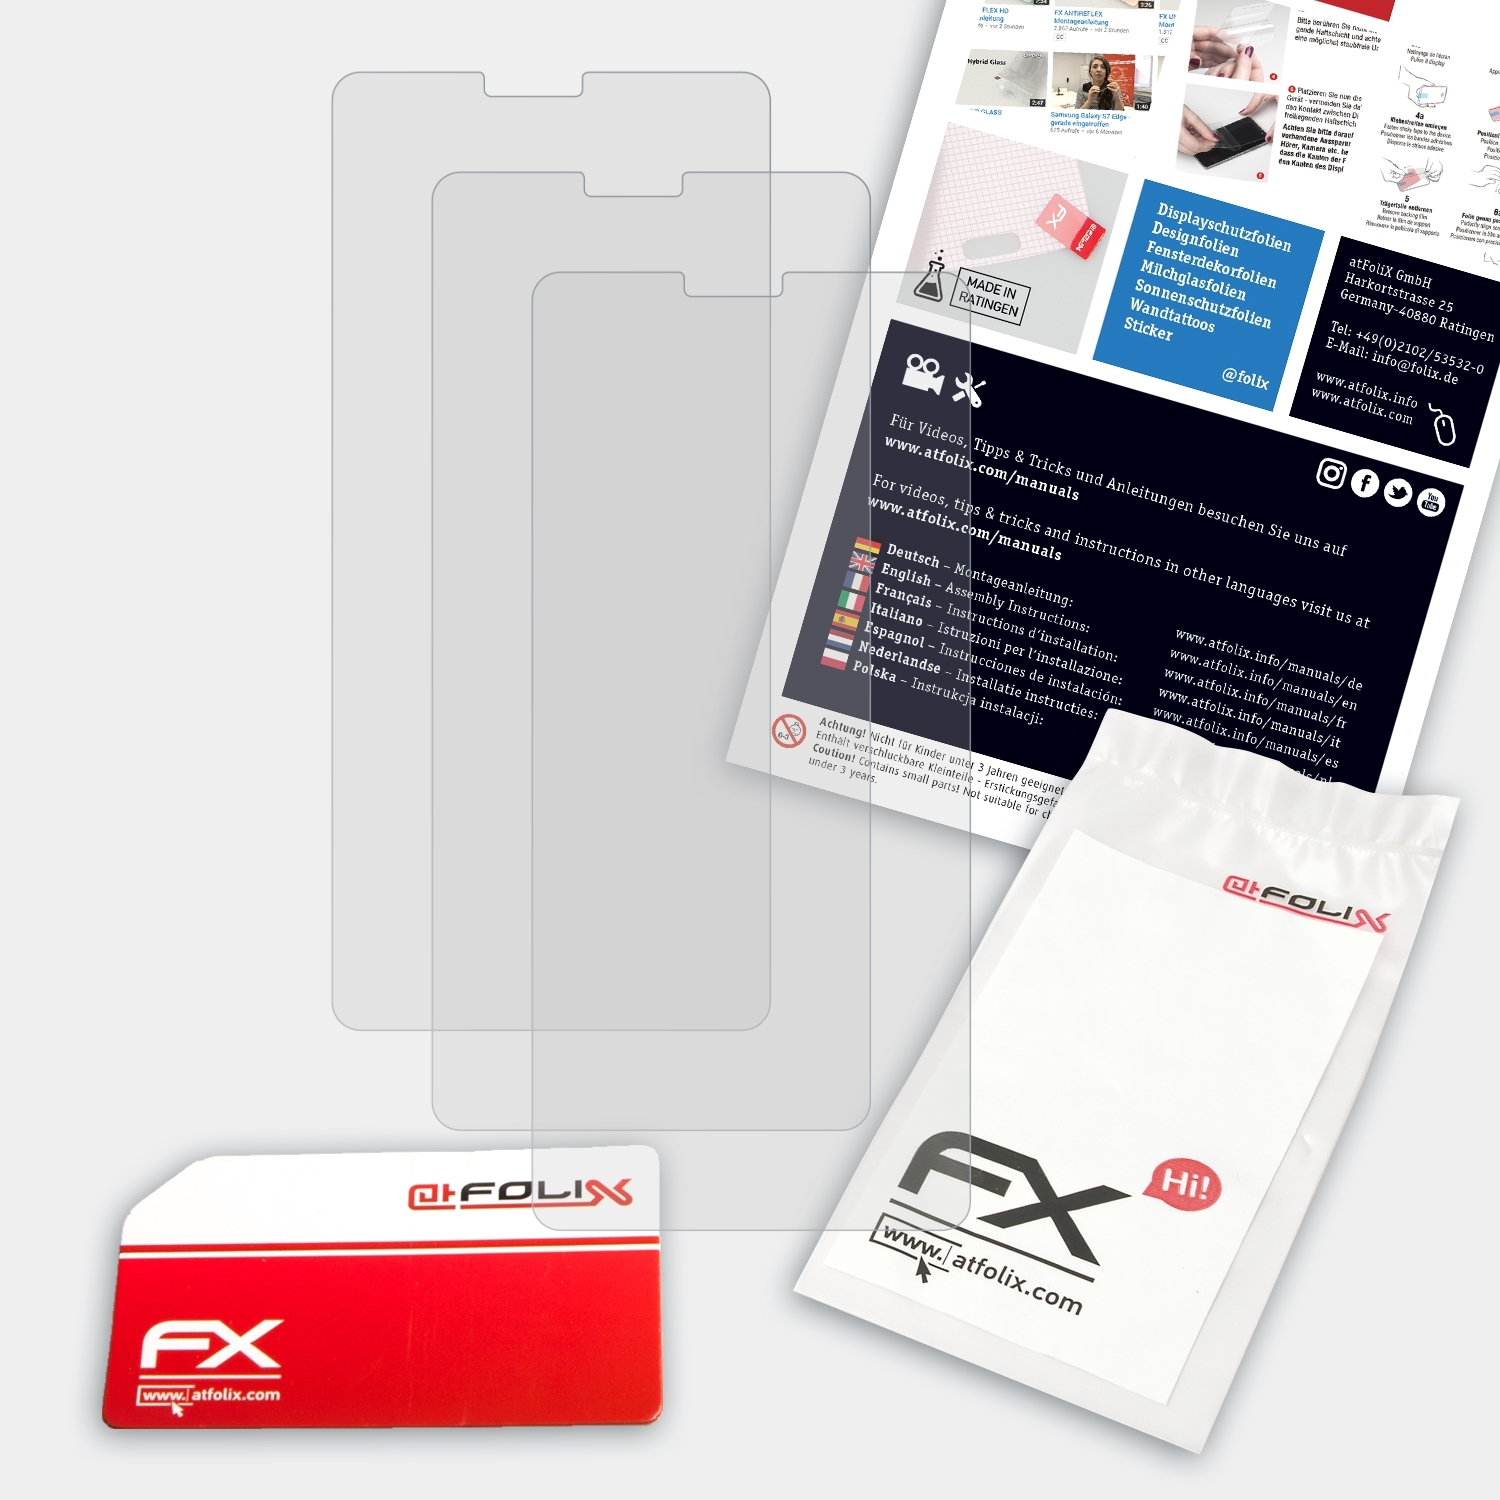 3x FX-Antireflex Smart X9) Displayschutz(für ATFOLIX Vodafone